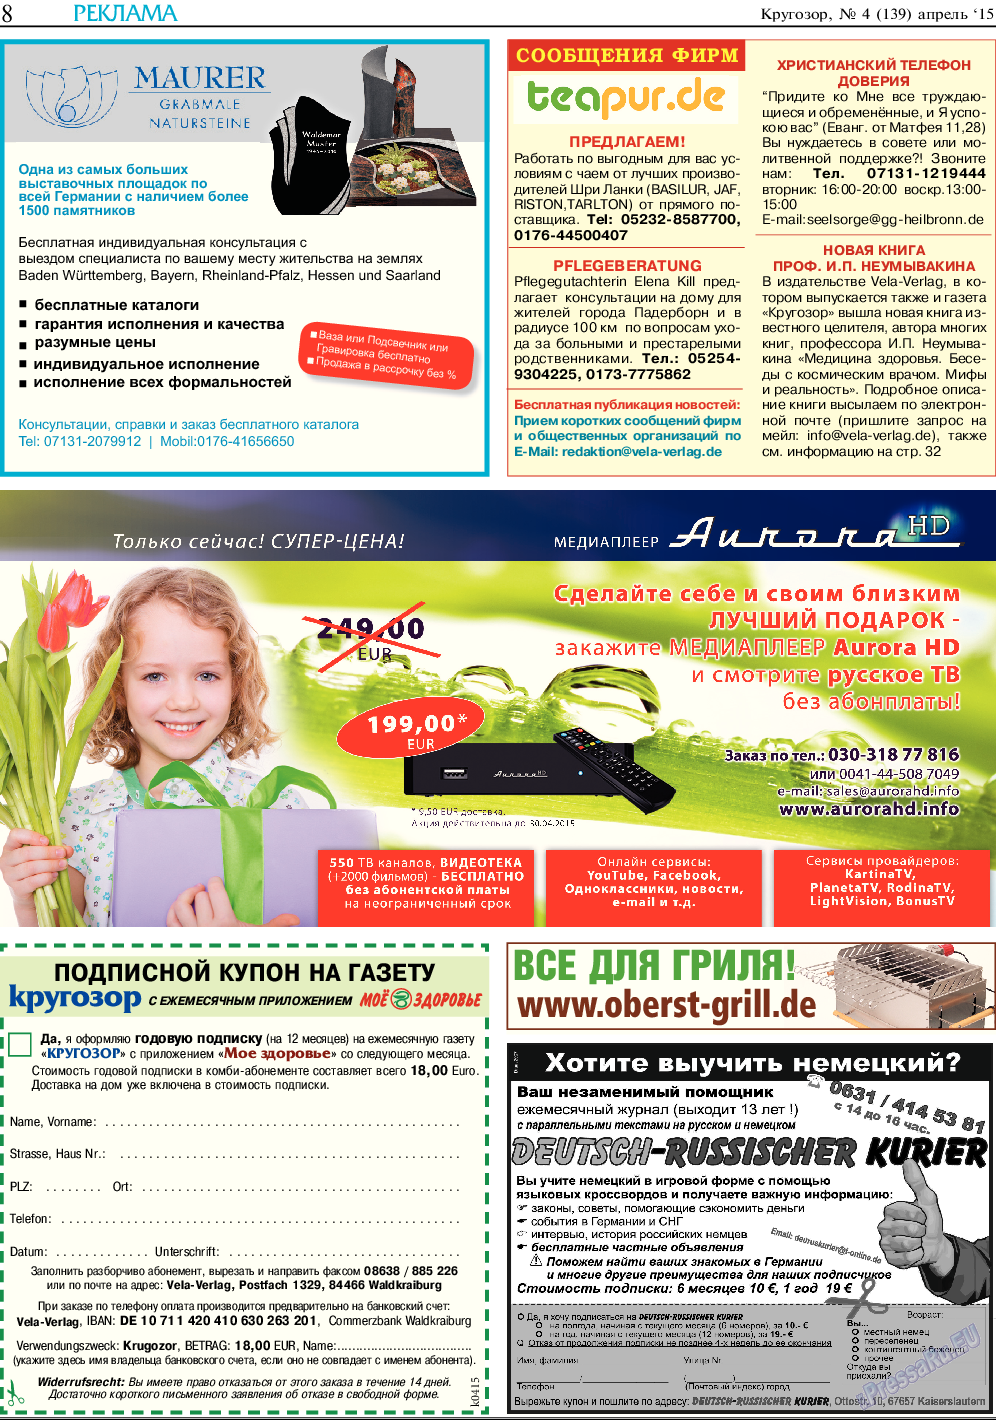 Кругозор, газета. 2015 №4 стр.8